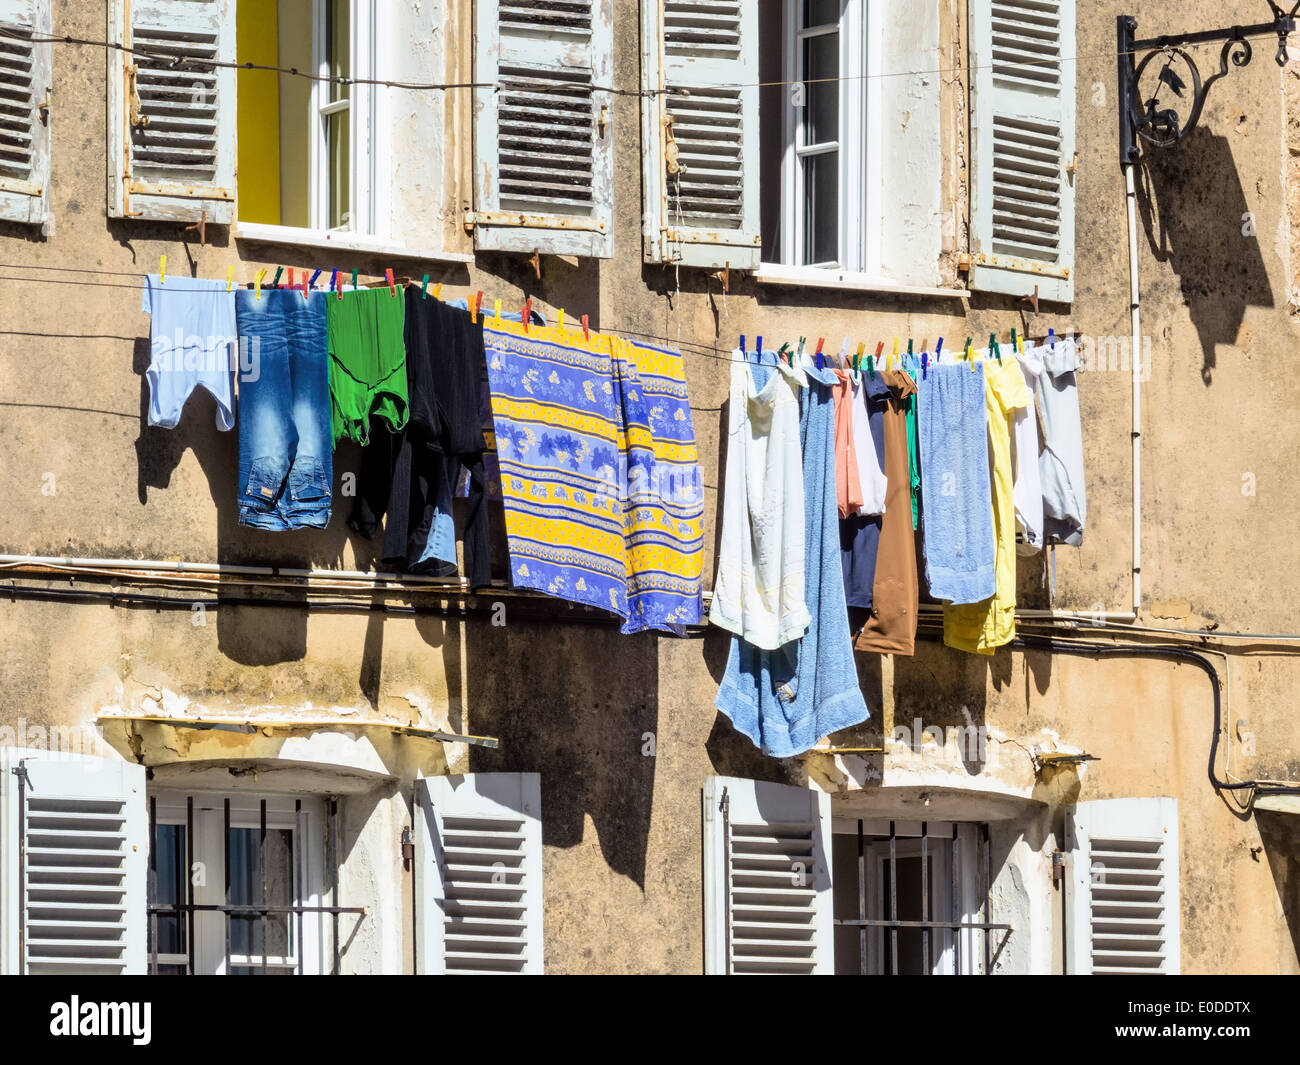 Laundry on the rope before a window, Waesche auf der Leine vor einem Fenster Stock Photo